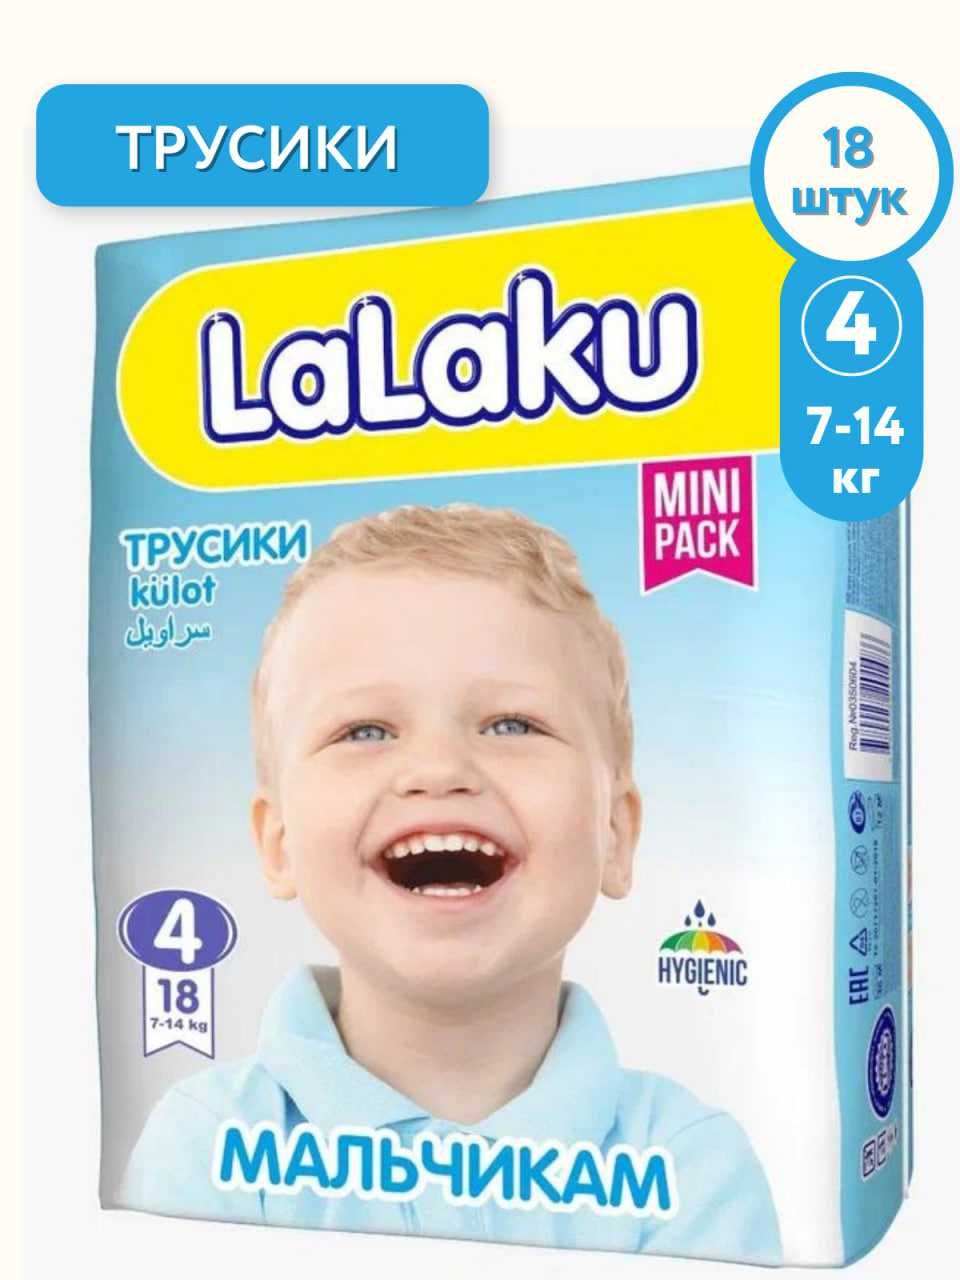 ЛаЛаКу "LaLaKu" bolalar tagliklari, Детские трусики-подгузники «LaLaKu